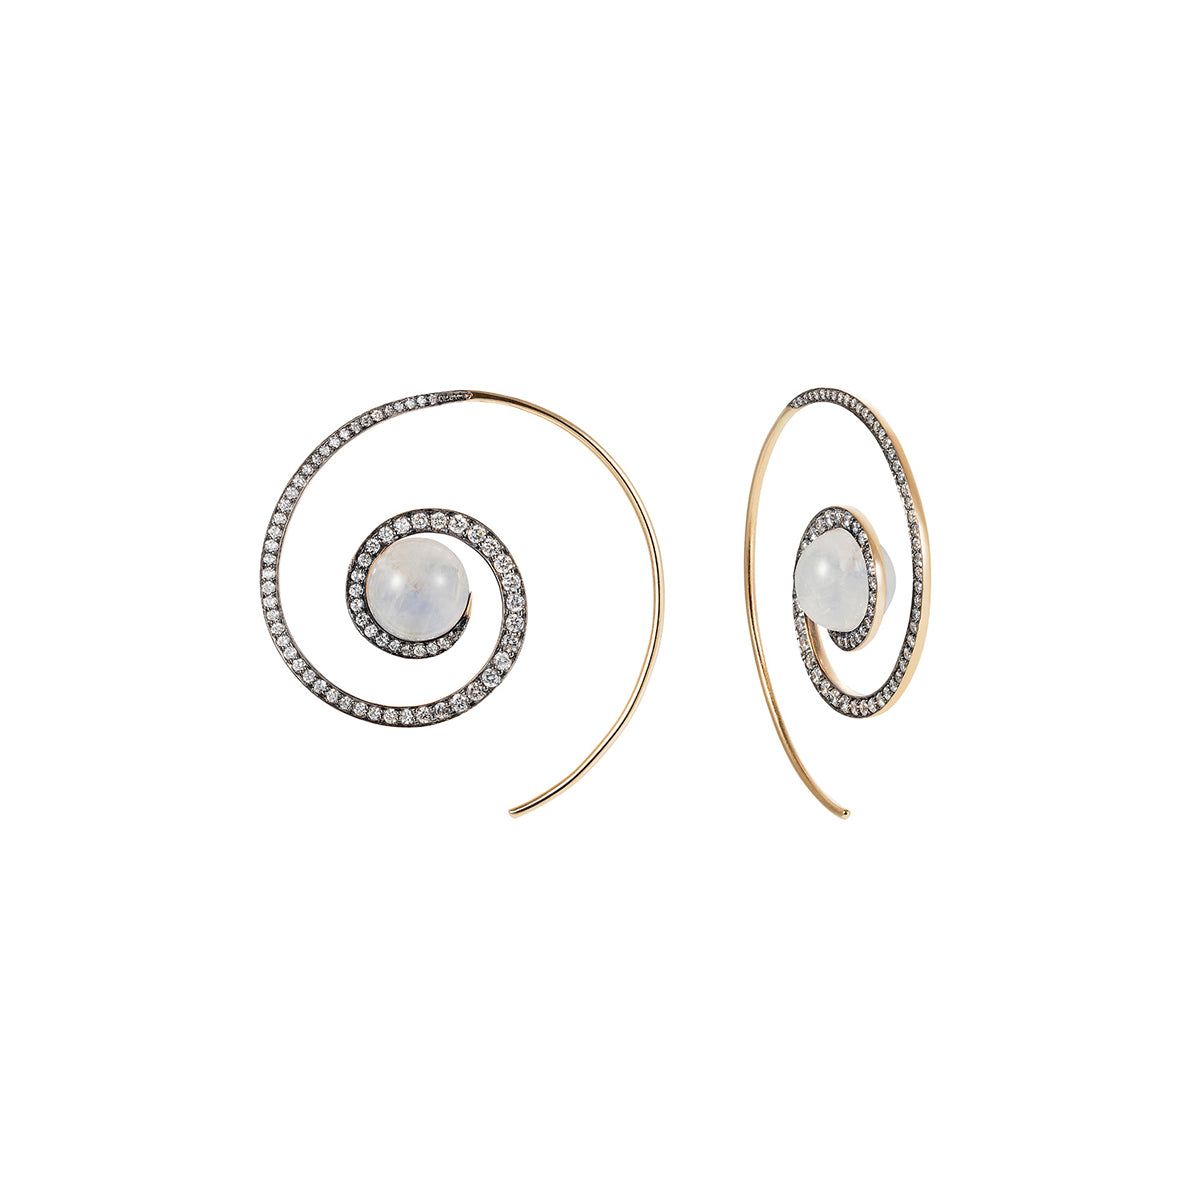 Noor Fares moonstone spiral moon earrings